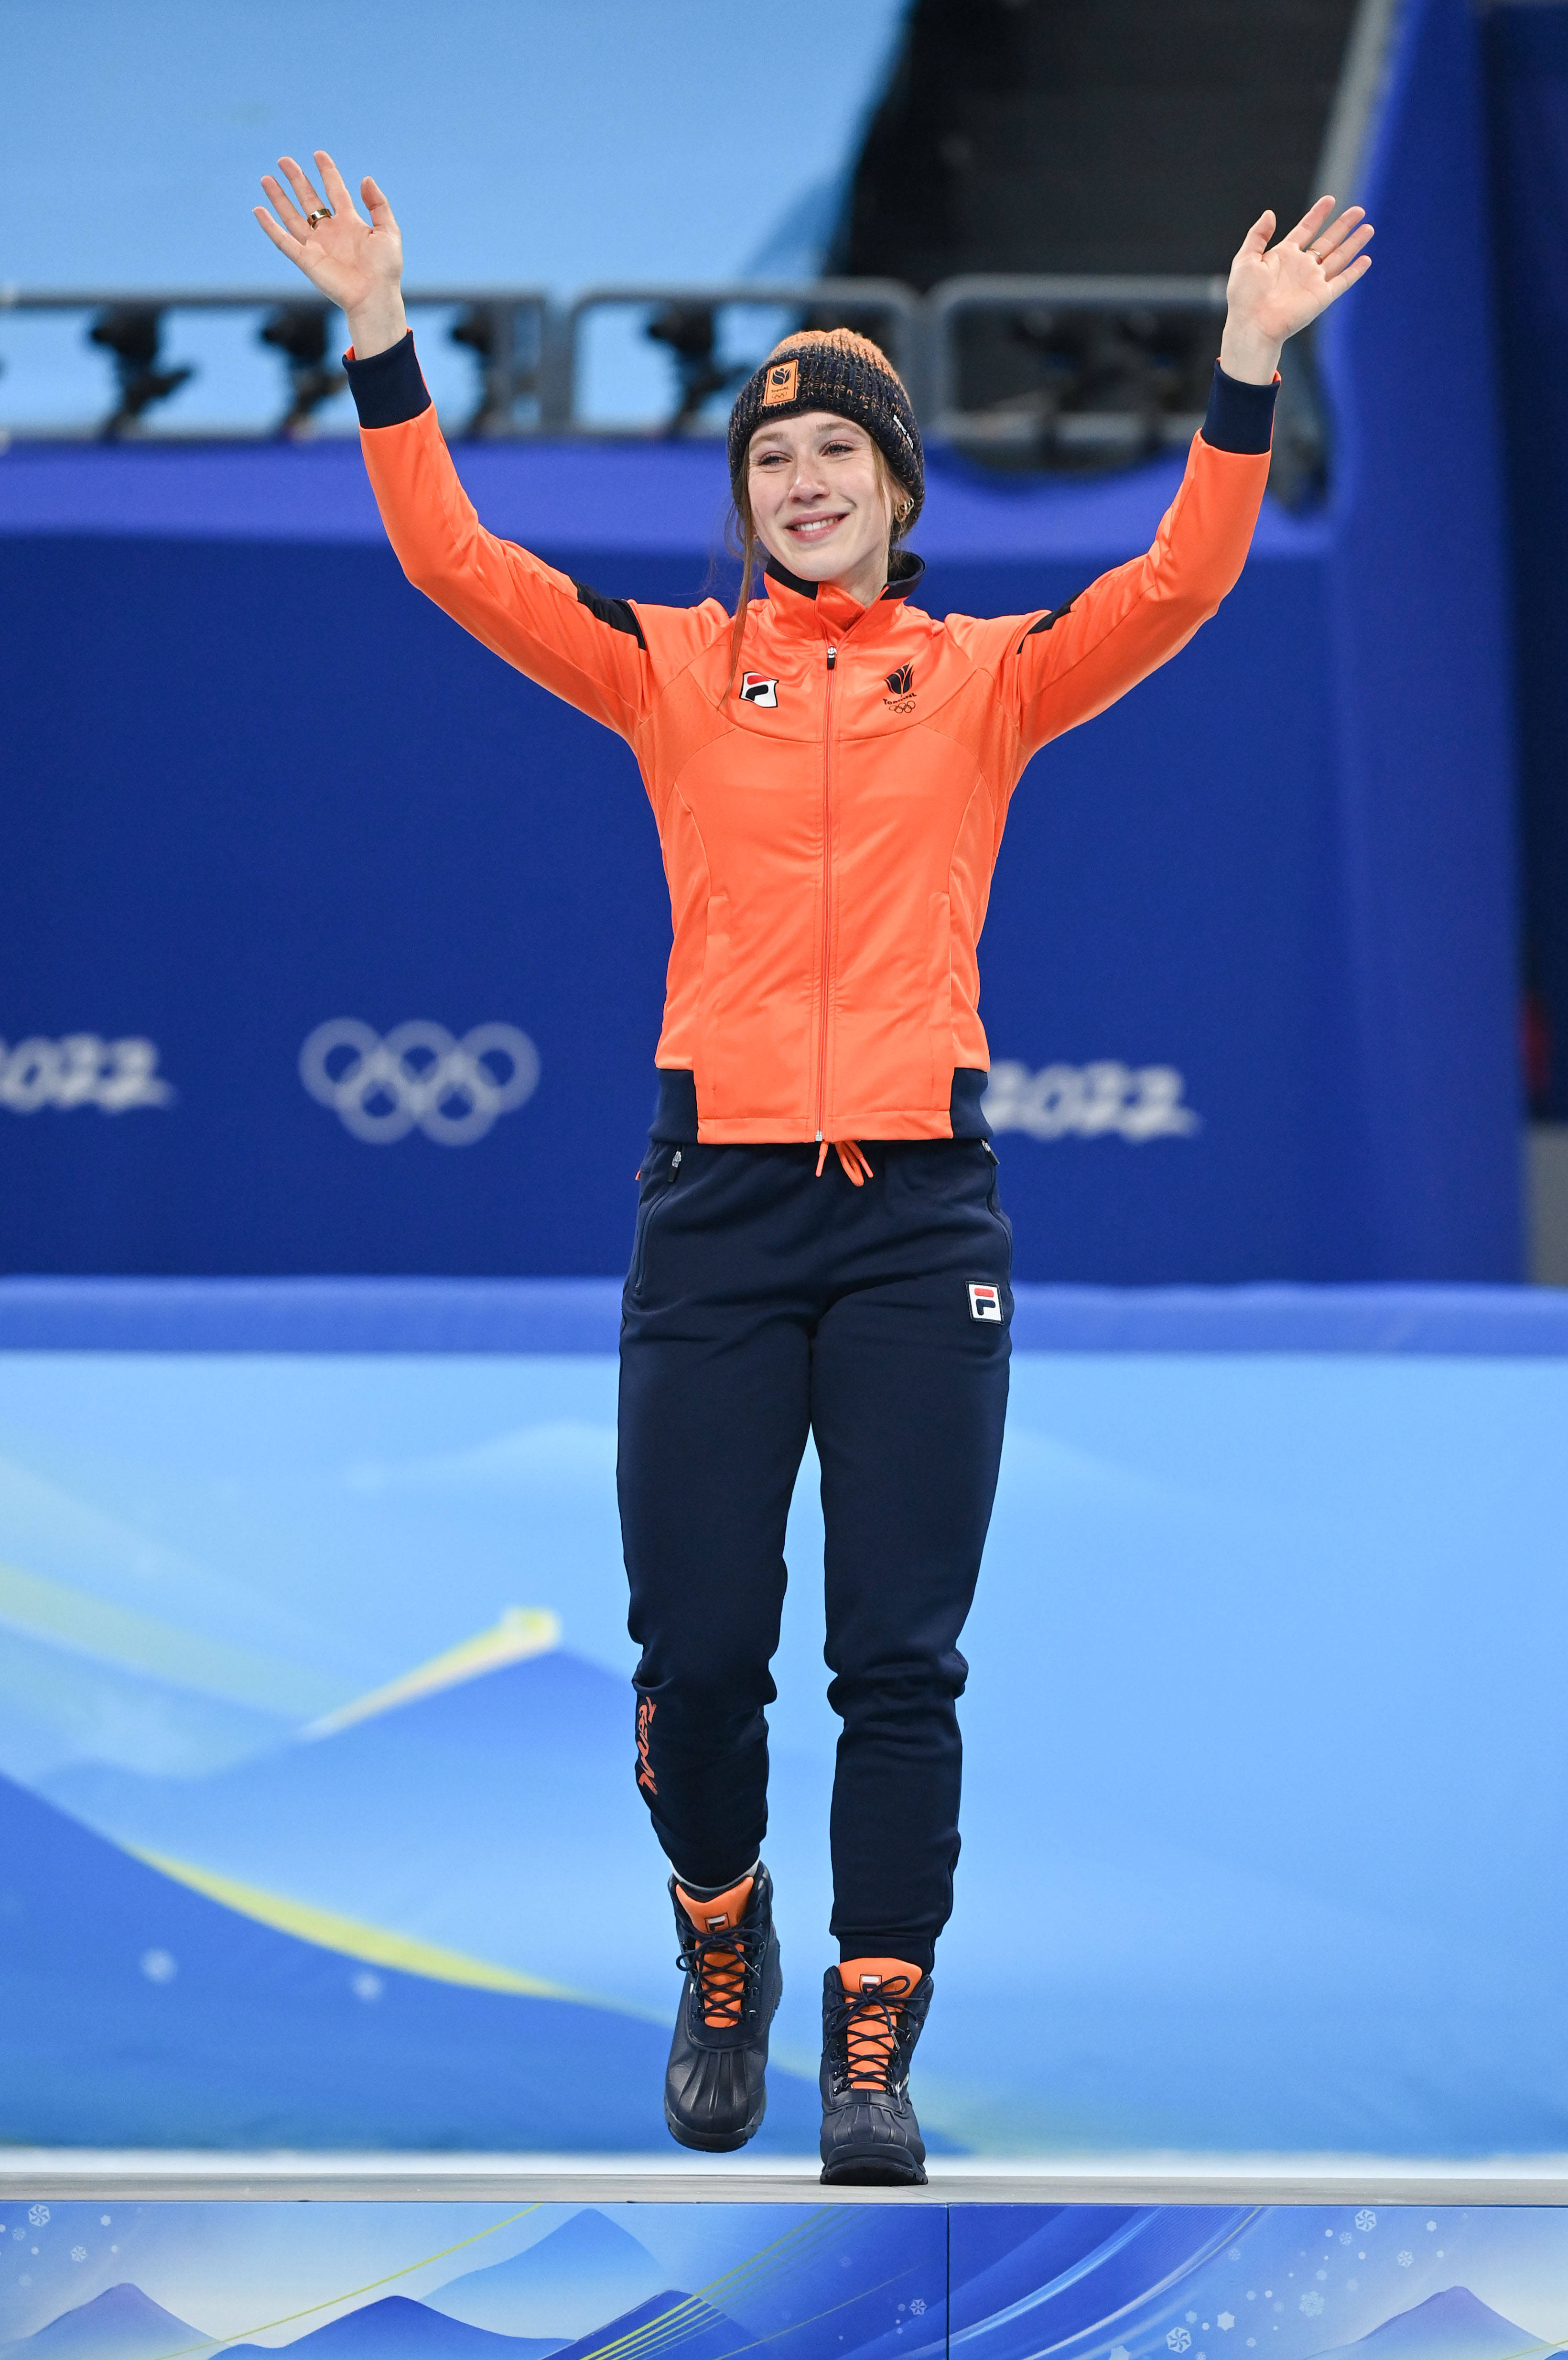 韩国短道速滑女队员47图片